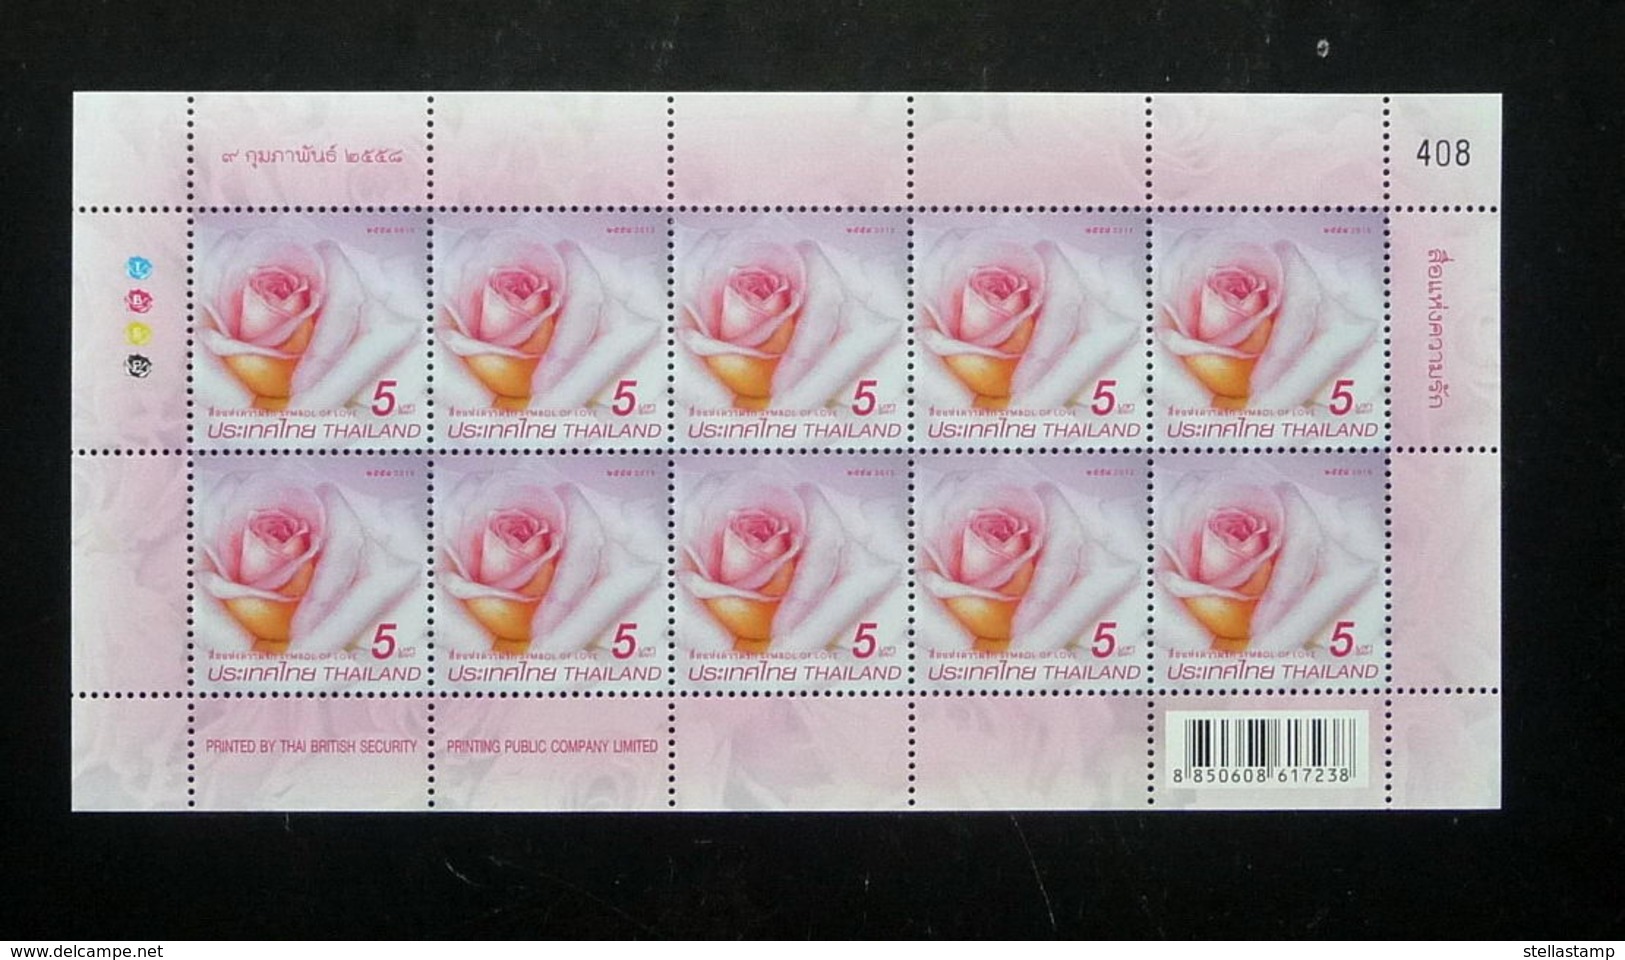 Thailand Stamp FS 2015 Symbol Of Love - Rose Princess Maha Chakri Sirindhorn - Thailand